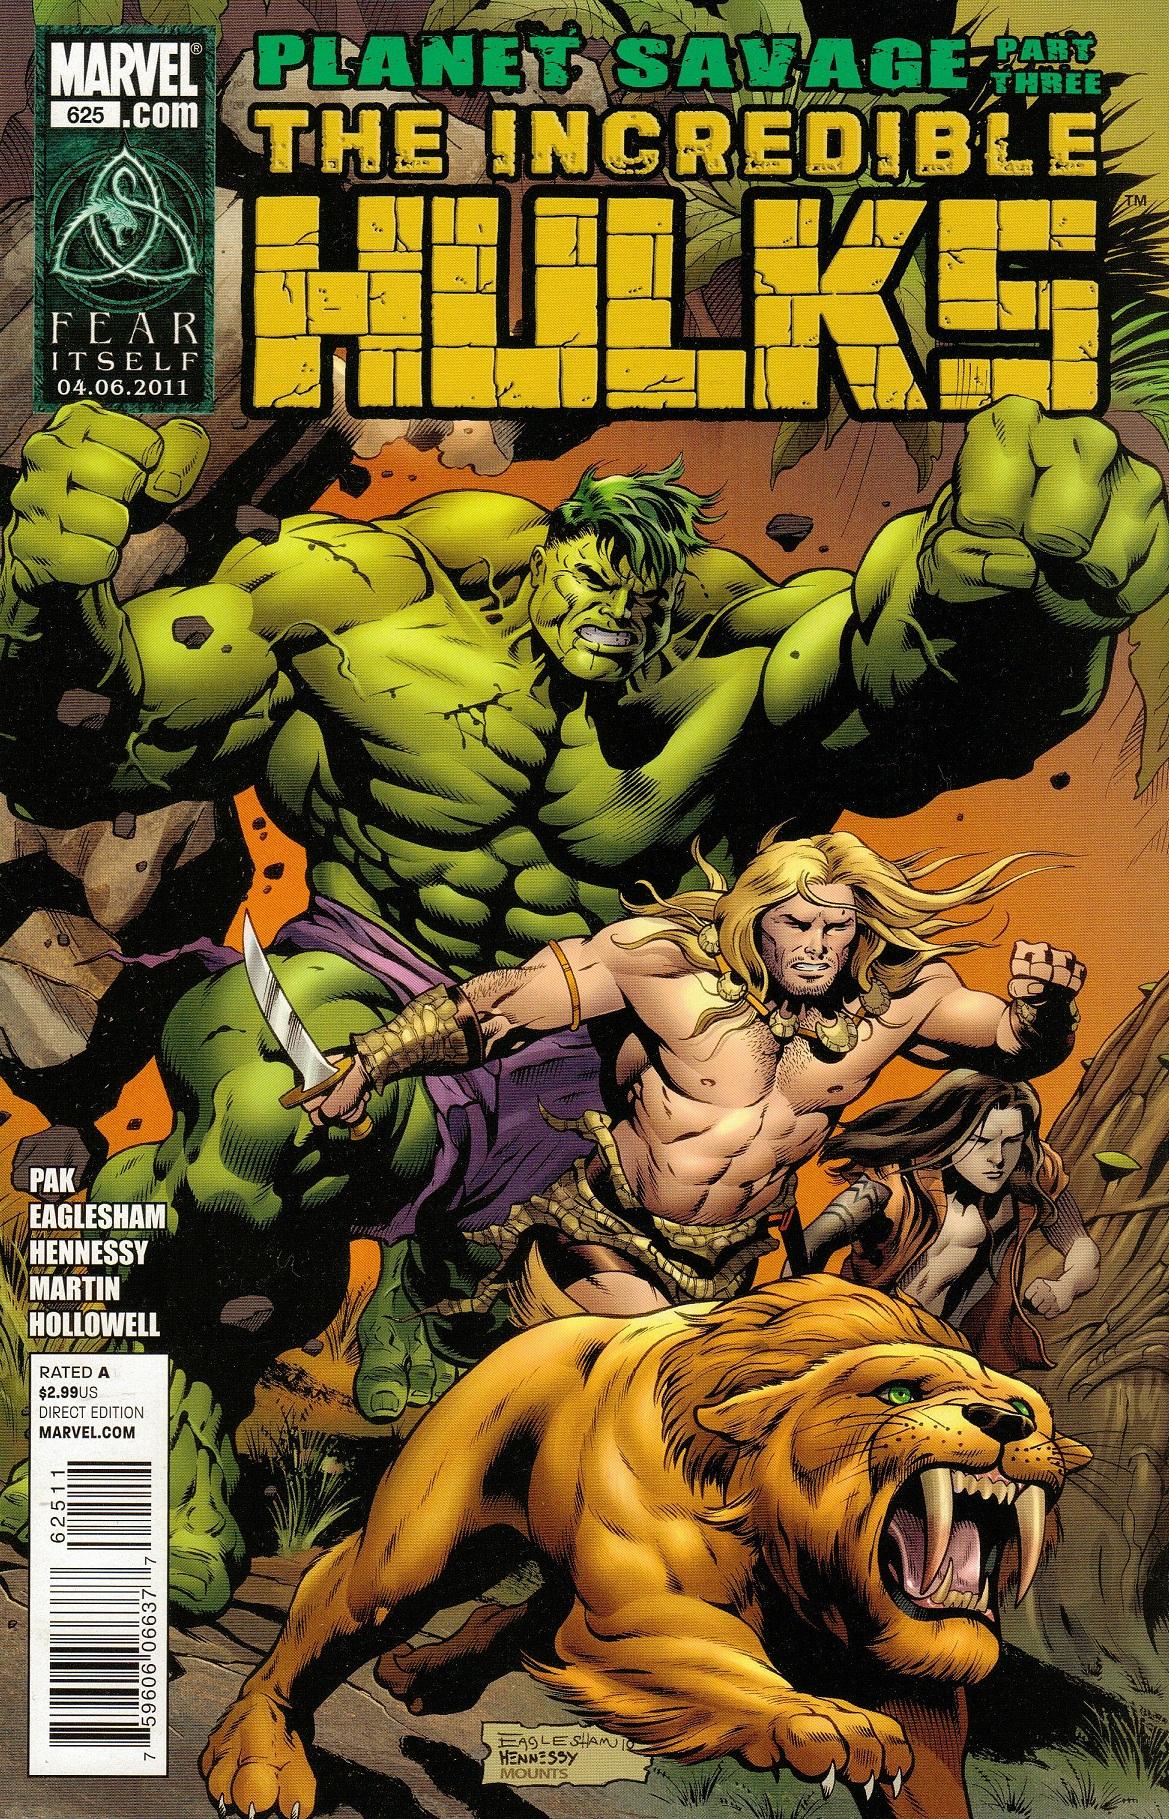 Incredible Hulks Vol. 1 #625